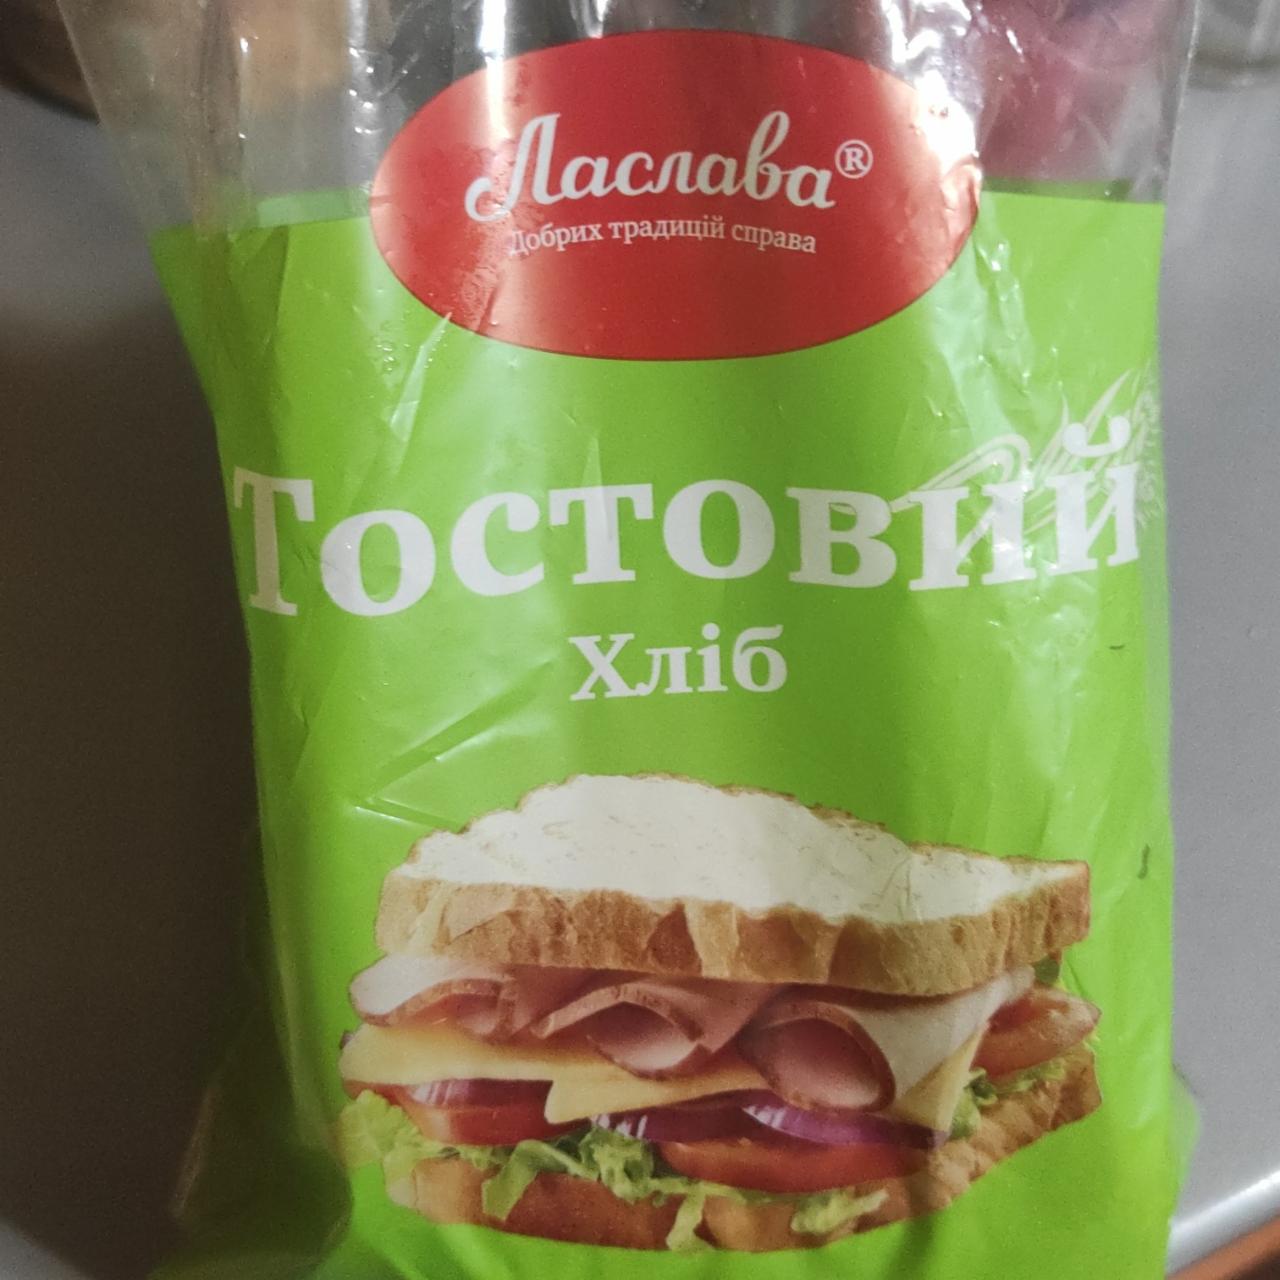 Фото - Тостовий хліб Ласлава